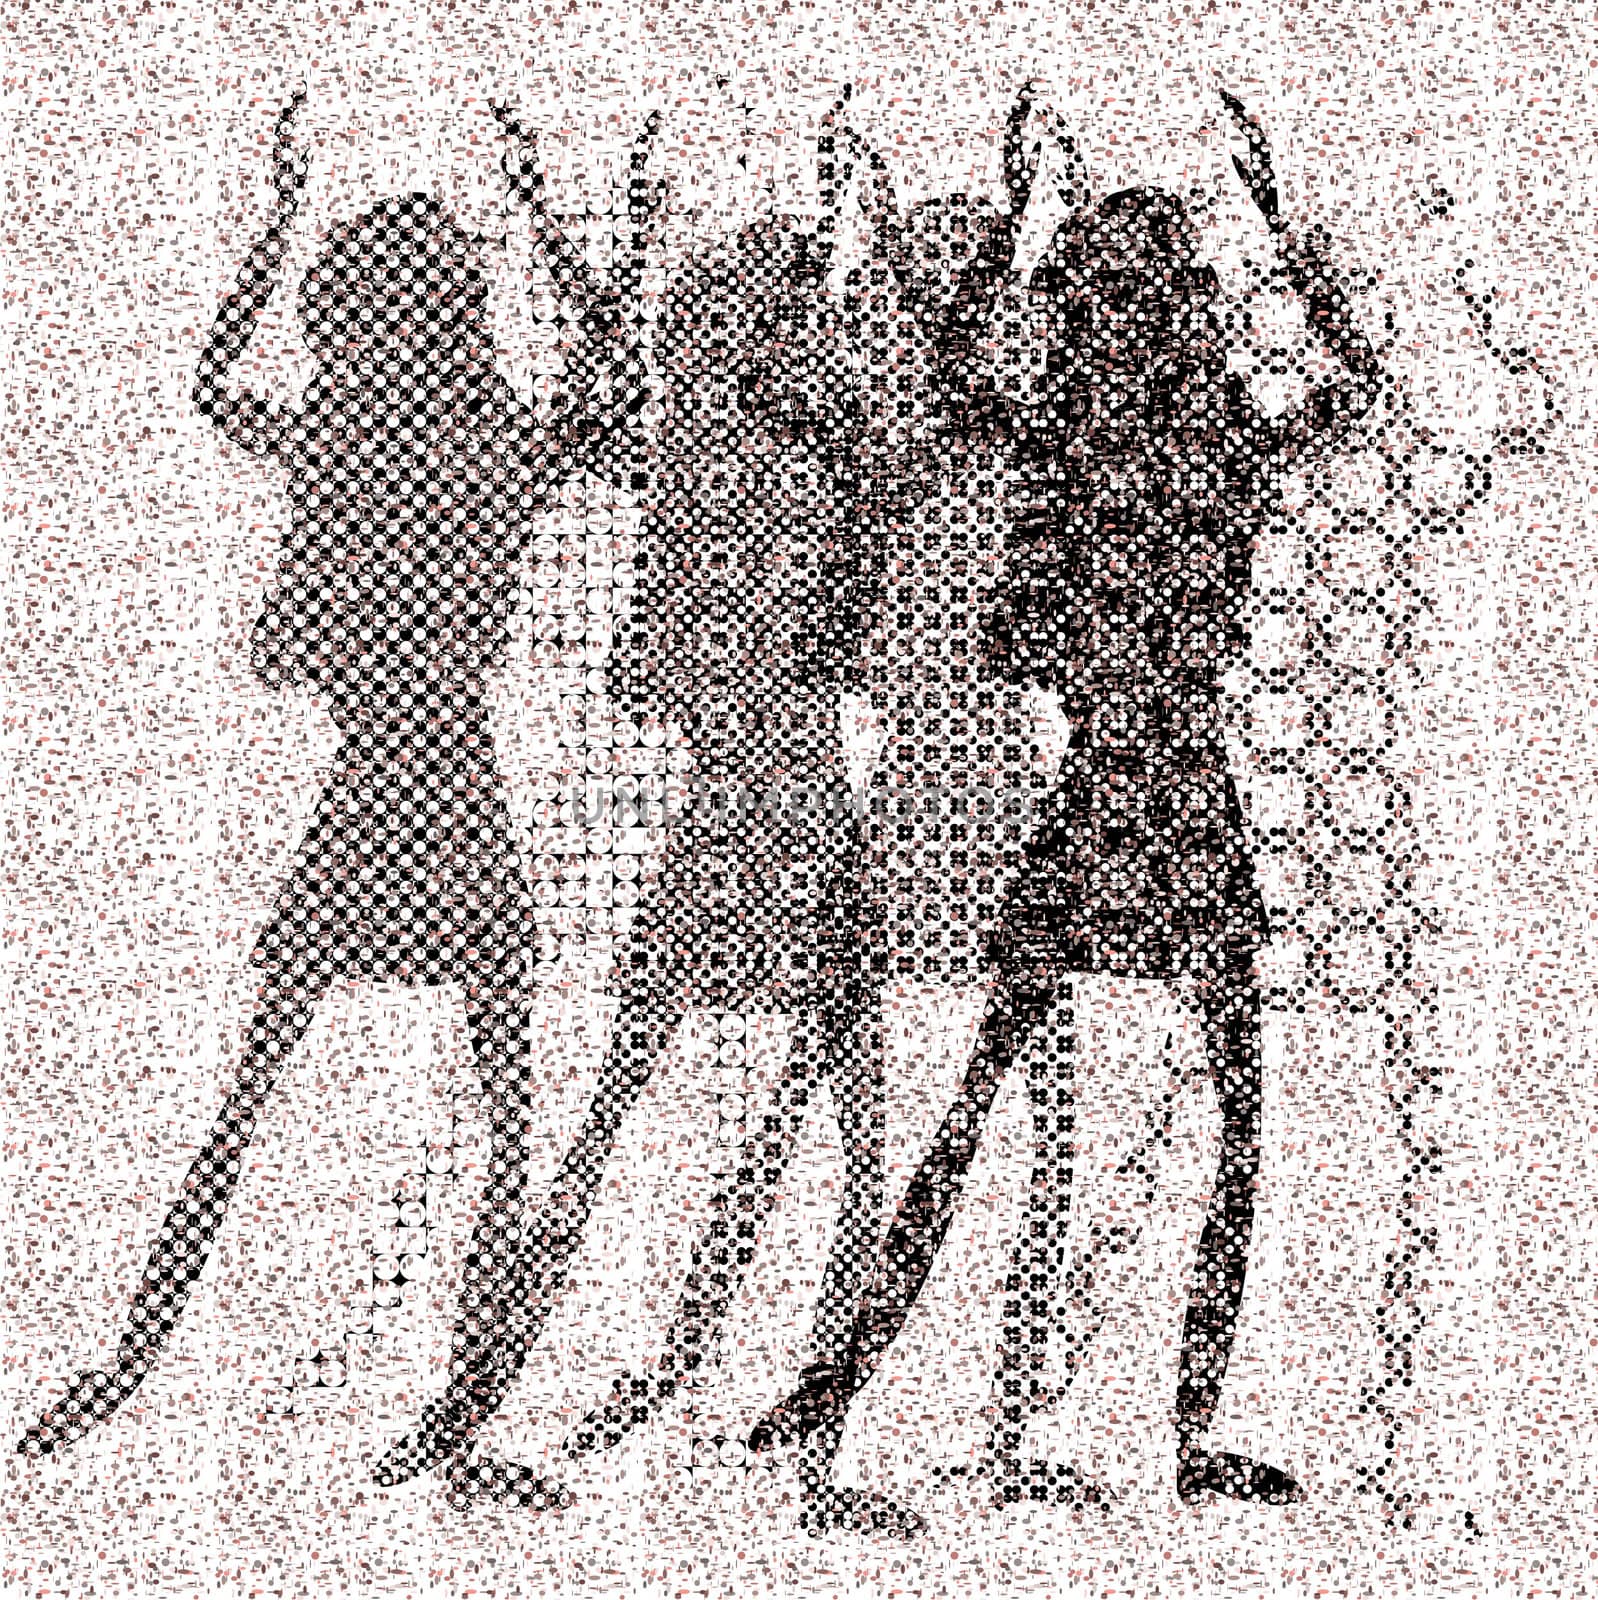 halftone raster dancing girls by karinclaus